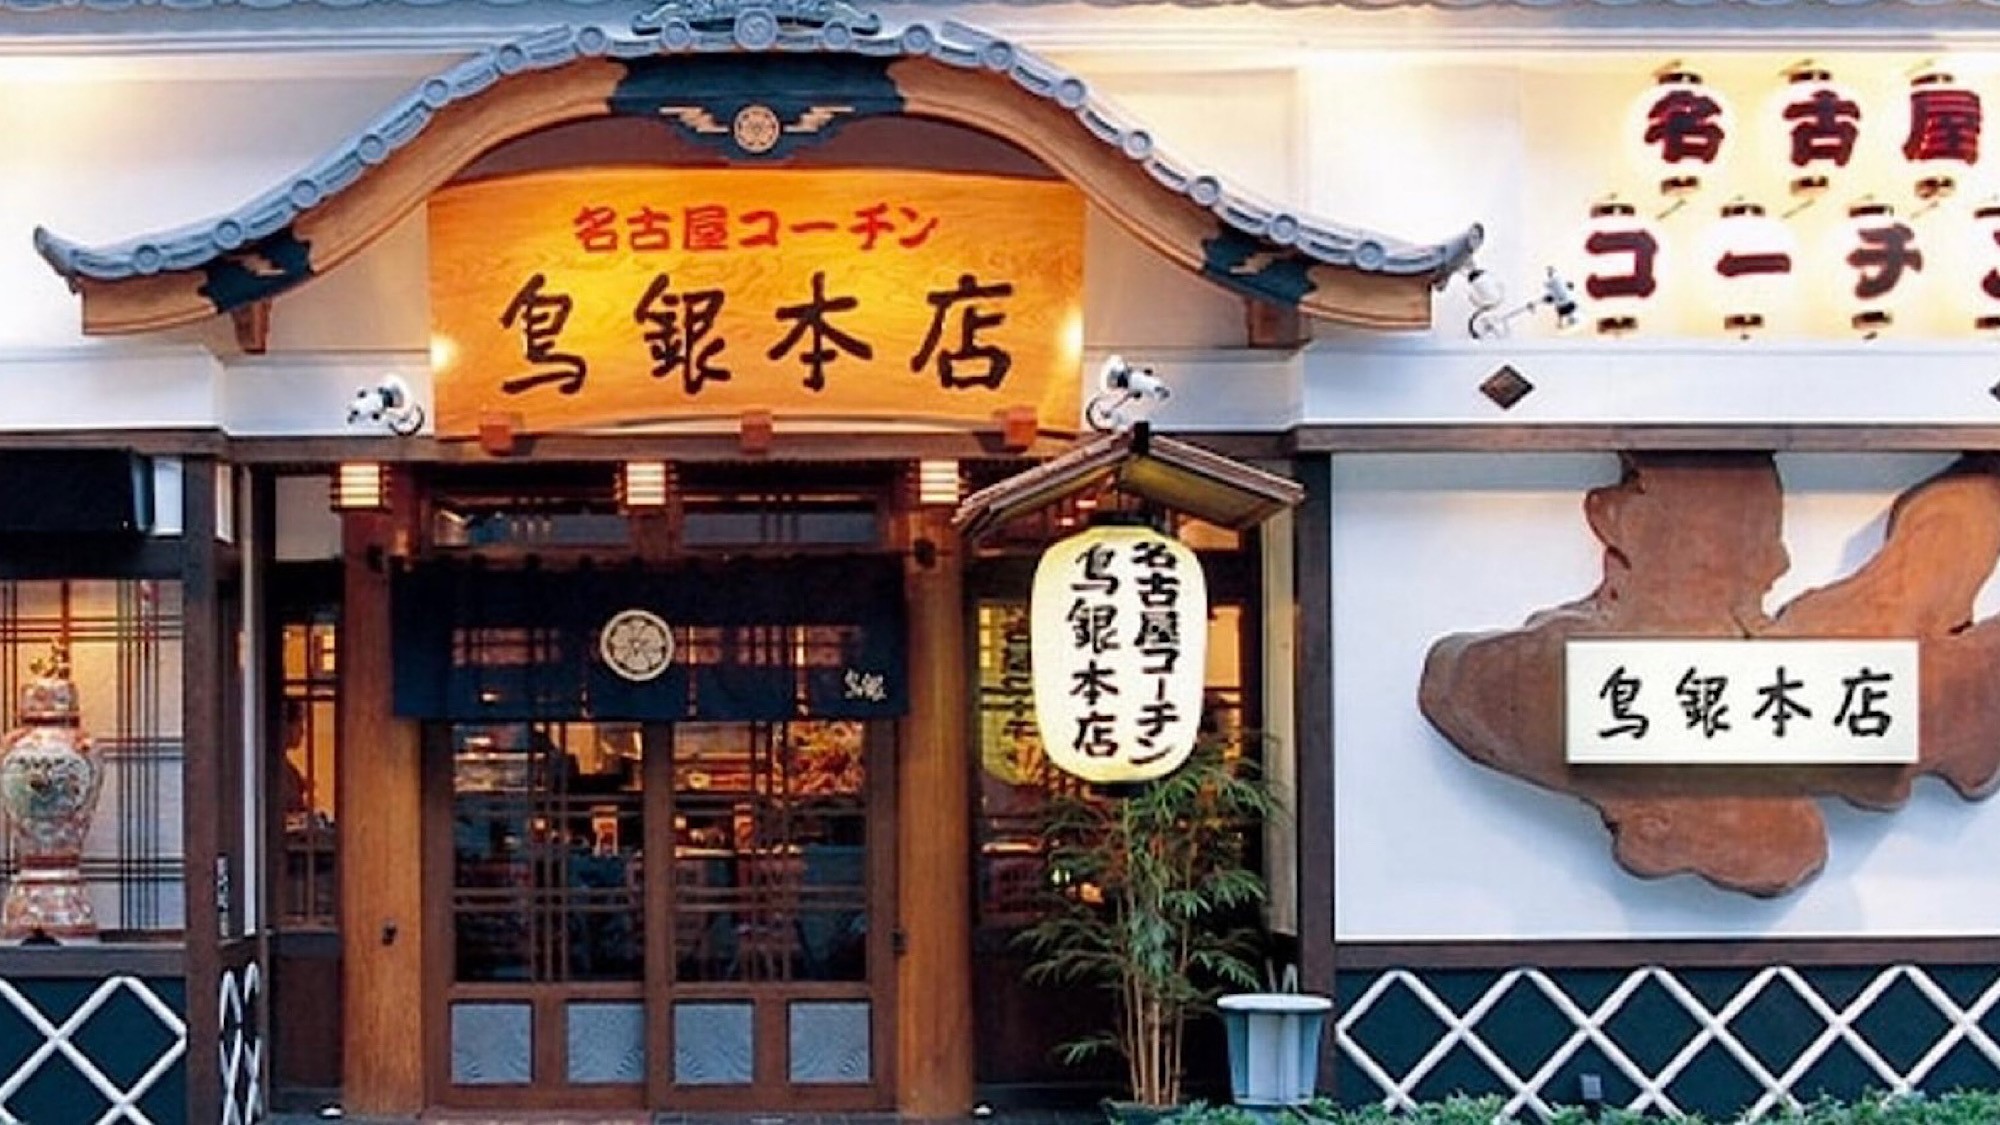 【老舗の鶏料理】名古屋コーチンの有名店といえばここ。〇鳥銀本店ホテルから徒歩2分